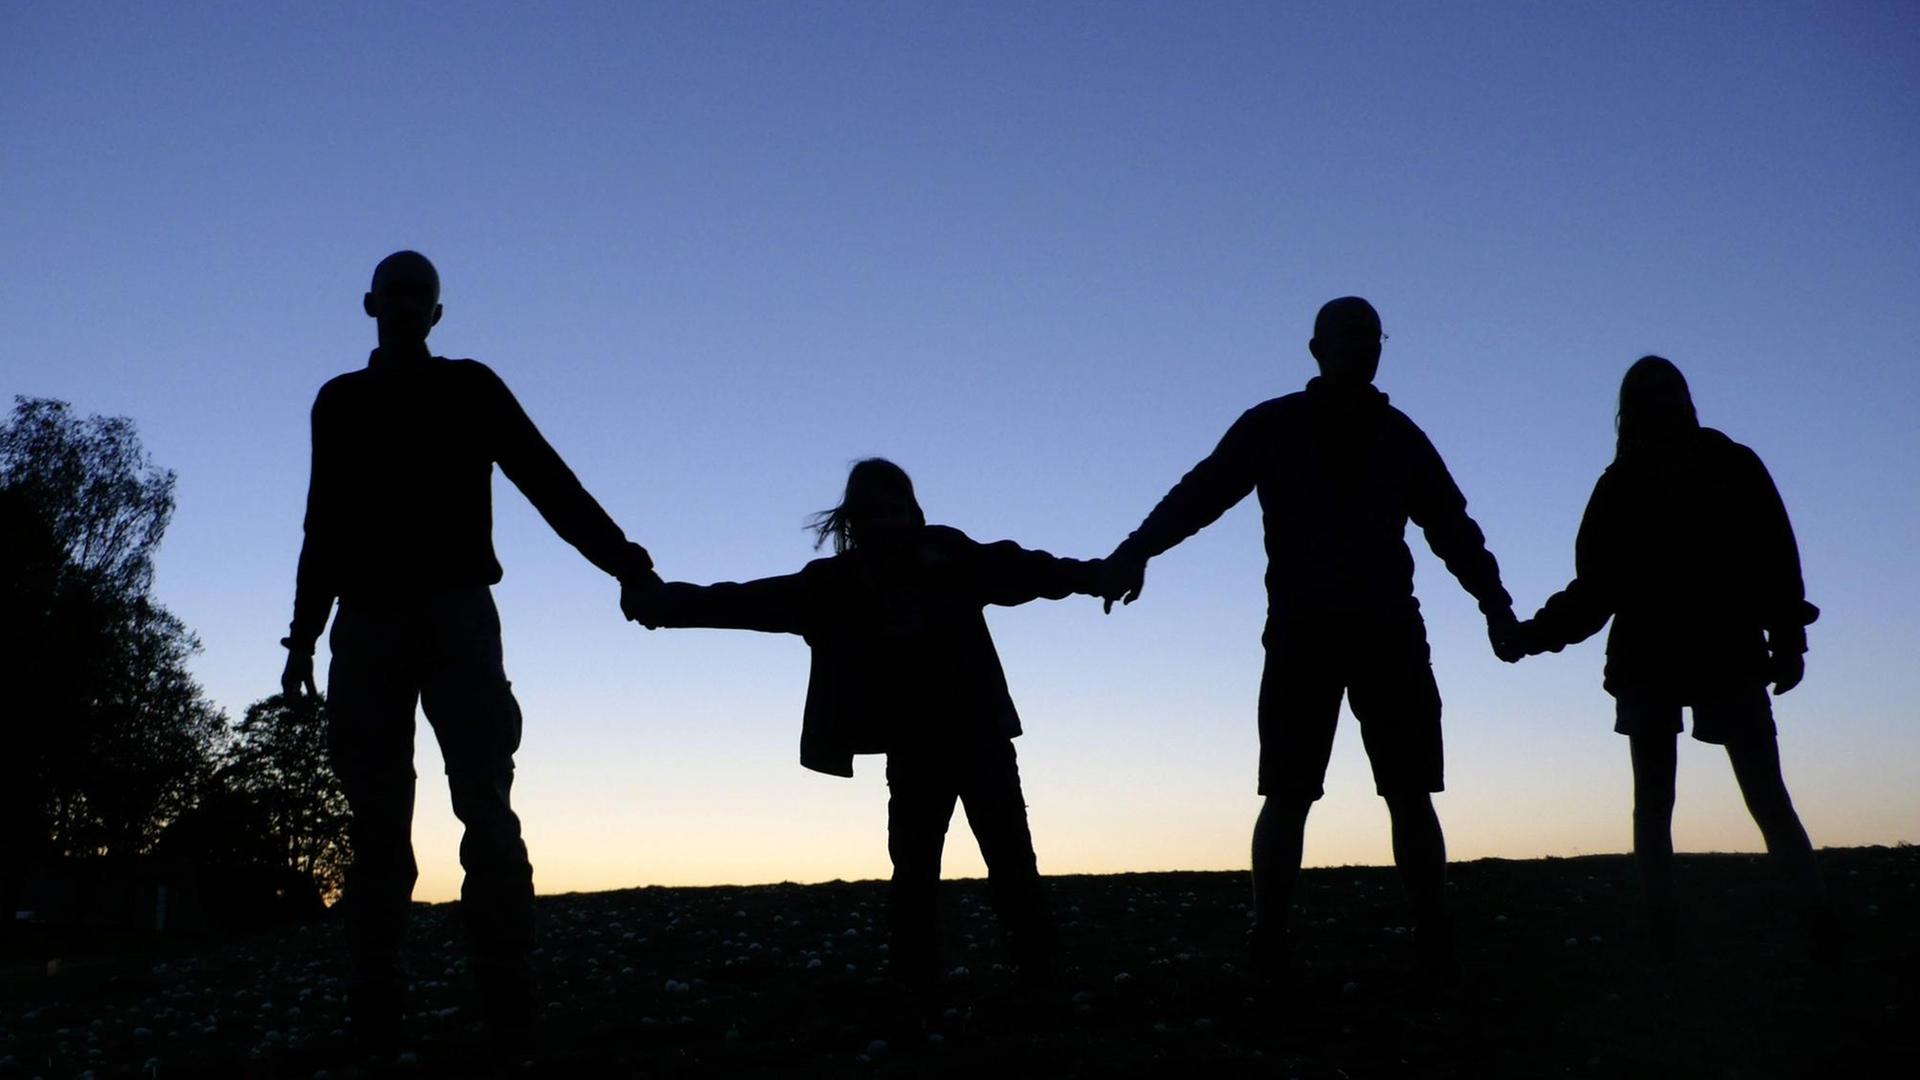 Drei Erwachsene und ein Kind halten sich die Hände, sie sind als Schattenriss vor dem dämmernden Himmel zu sehen. (Symbolbild gesellschaftlicher Zusammenhalt)